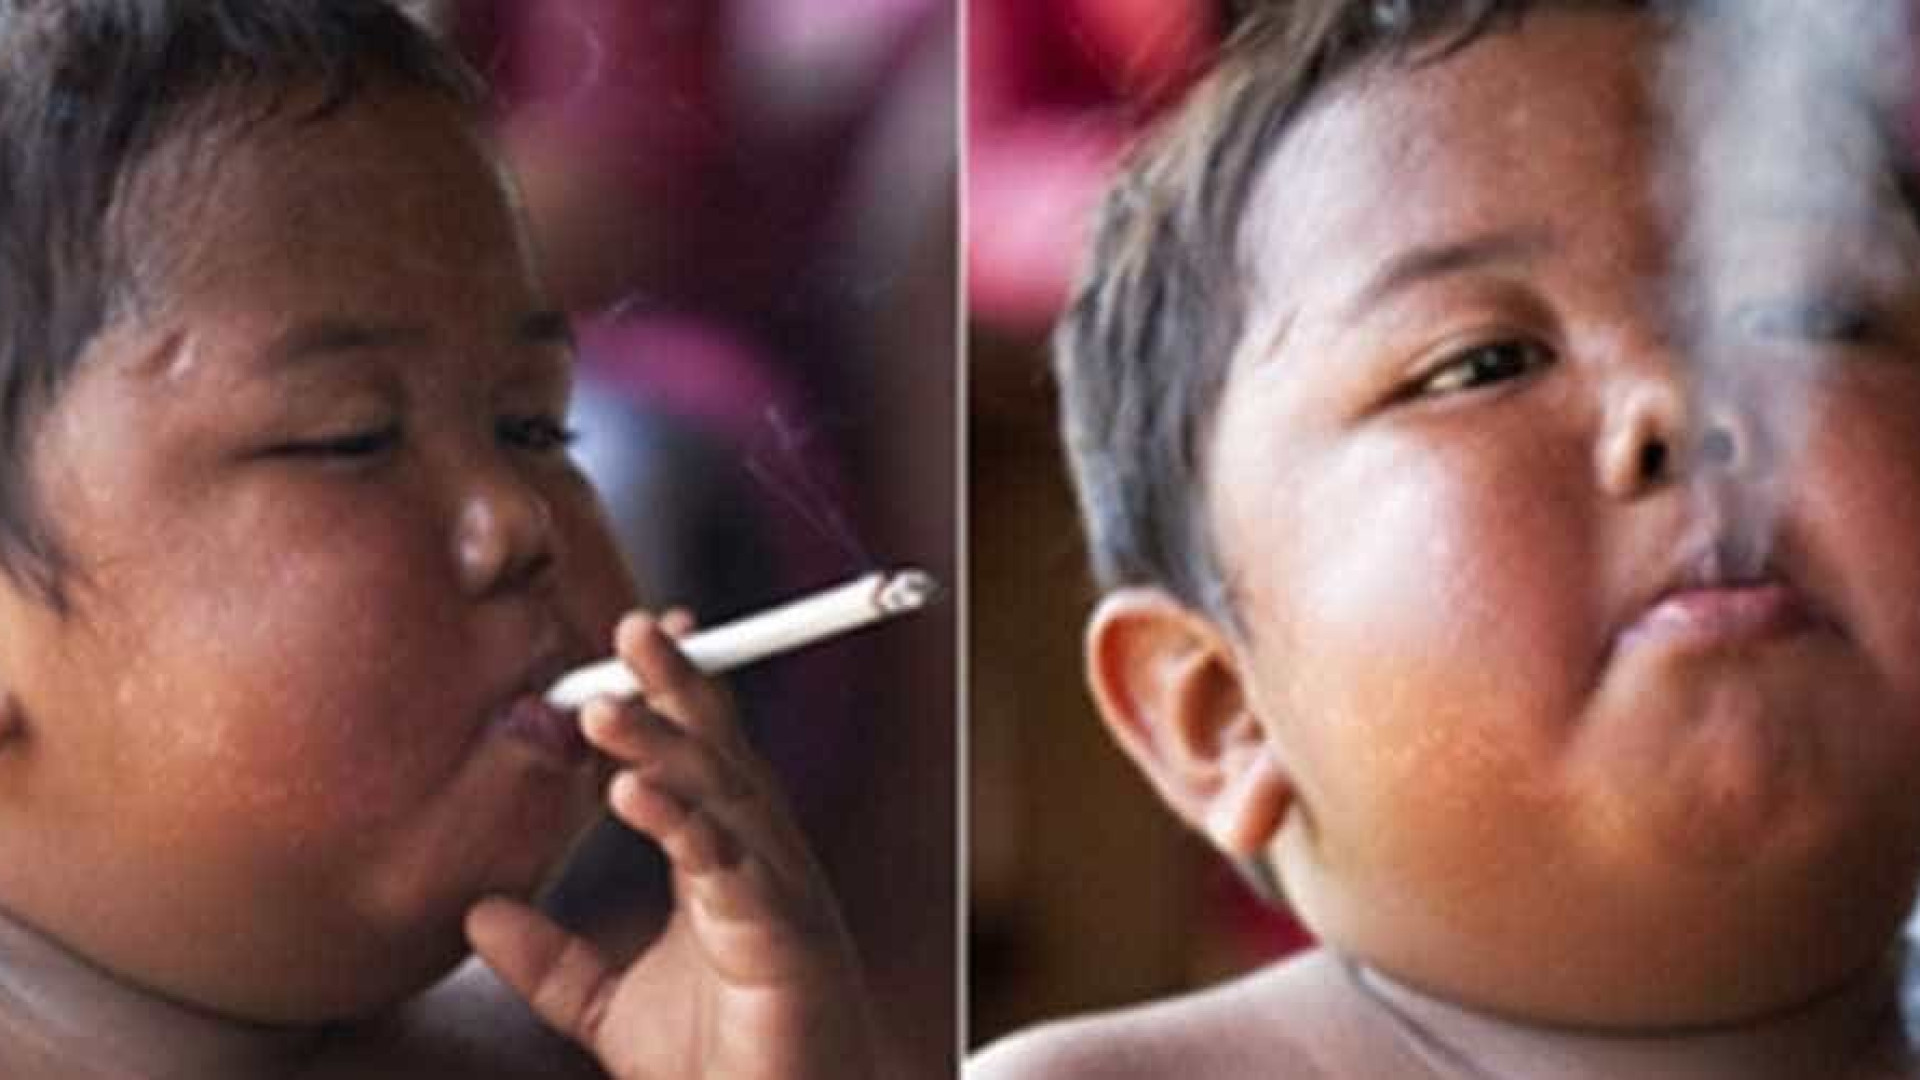 VocÃª lembra do bebÃª fumante da IndonÃ©sia? Veja como ele estÃ¡